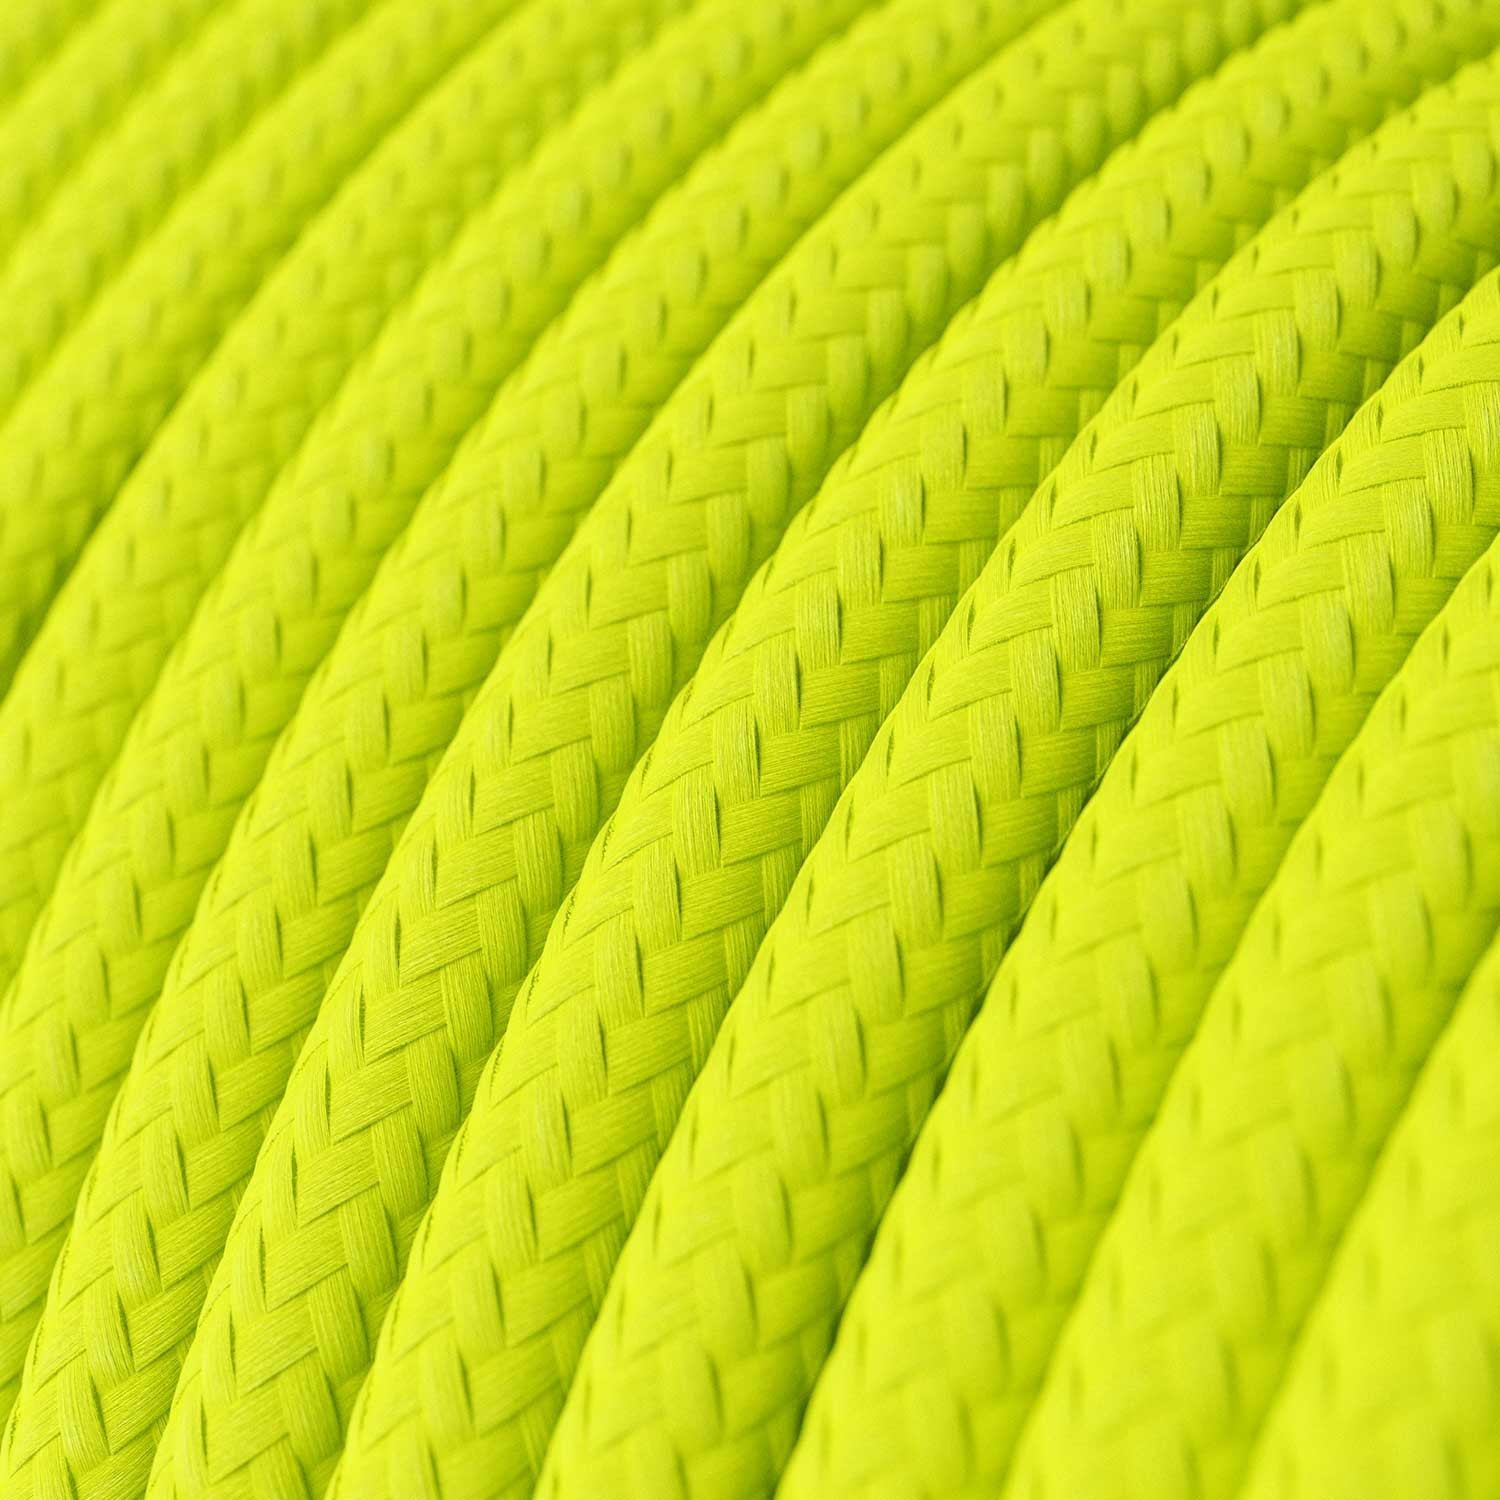 Câble textile Jaune fluo brillant - L'Original Creative-Cables - RF10 rond 2x0,75mm / 3x0,75mm